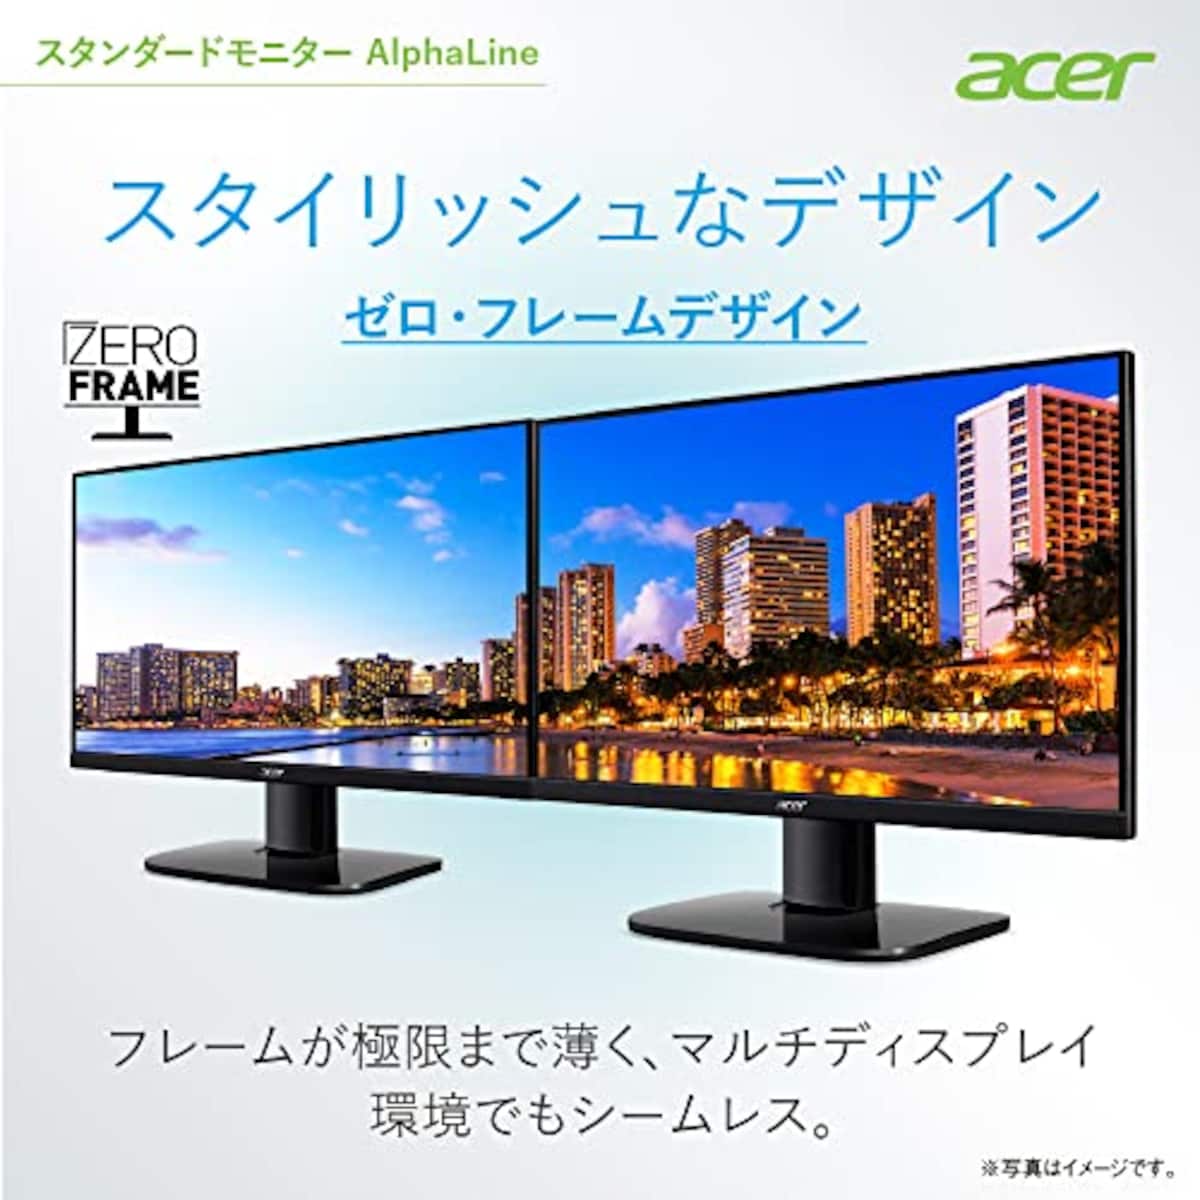  日本エイサー 【Amazon.co.jp限定】Acer モニター 27インチ フルHD VA 非光沢100Hz 1ms HDMI ミニD-Sub15 VESAマウント対応 スピーカー内蔵 AMD FreeSync KA272Hbmix画像4 